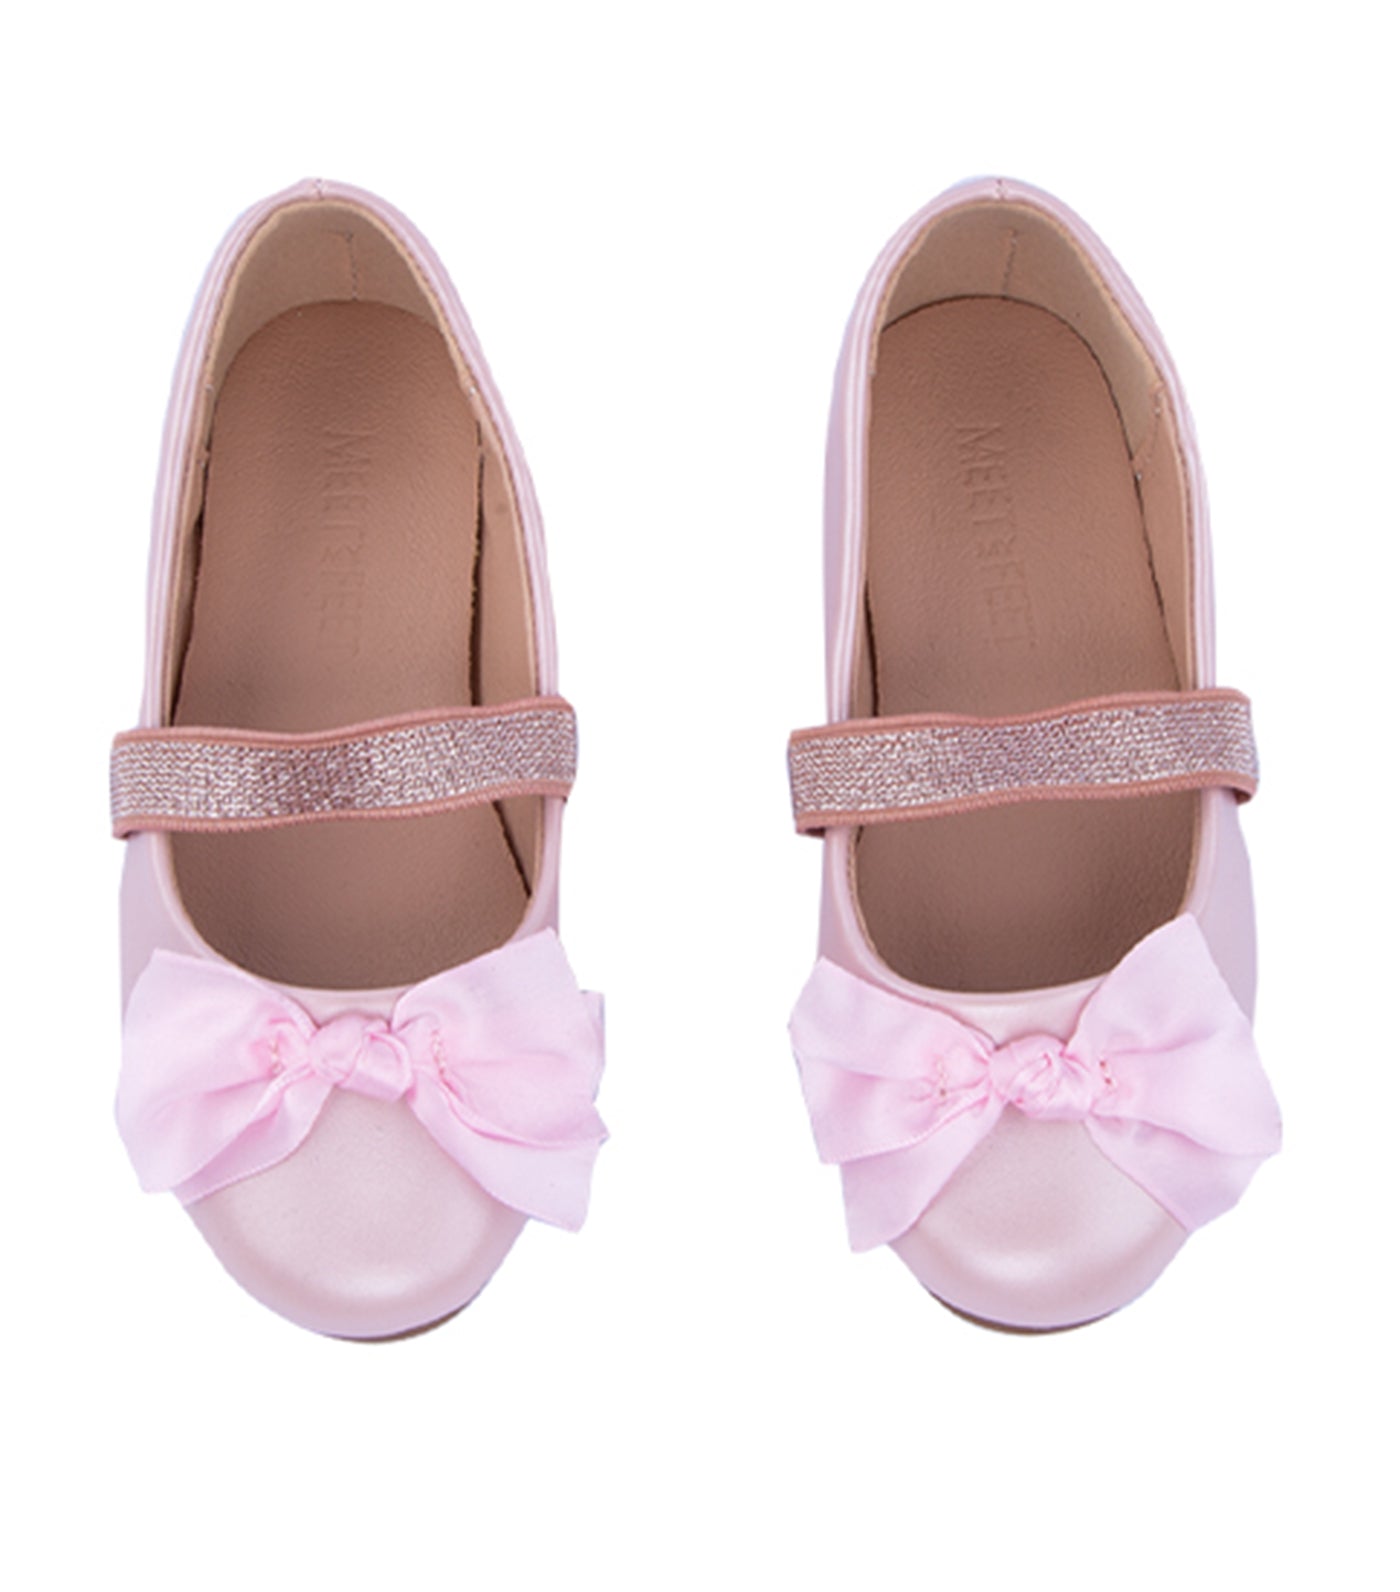 Blush Toddler to Kids Ballet Flats for Girls - Pink